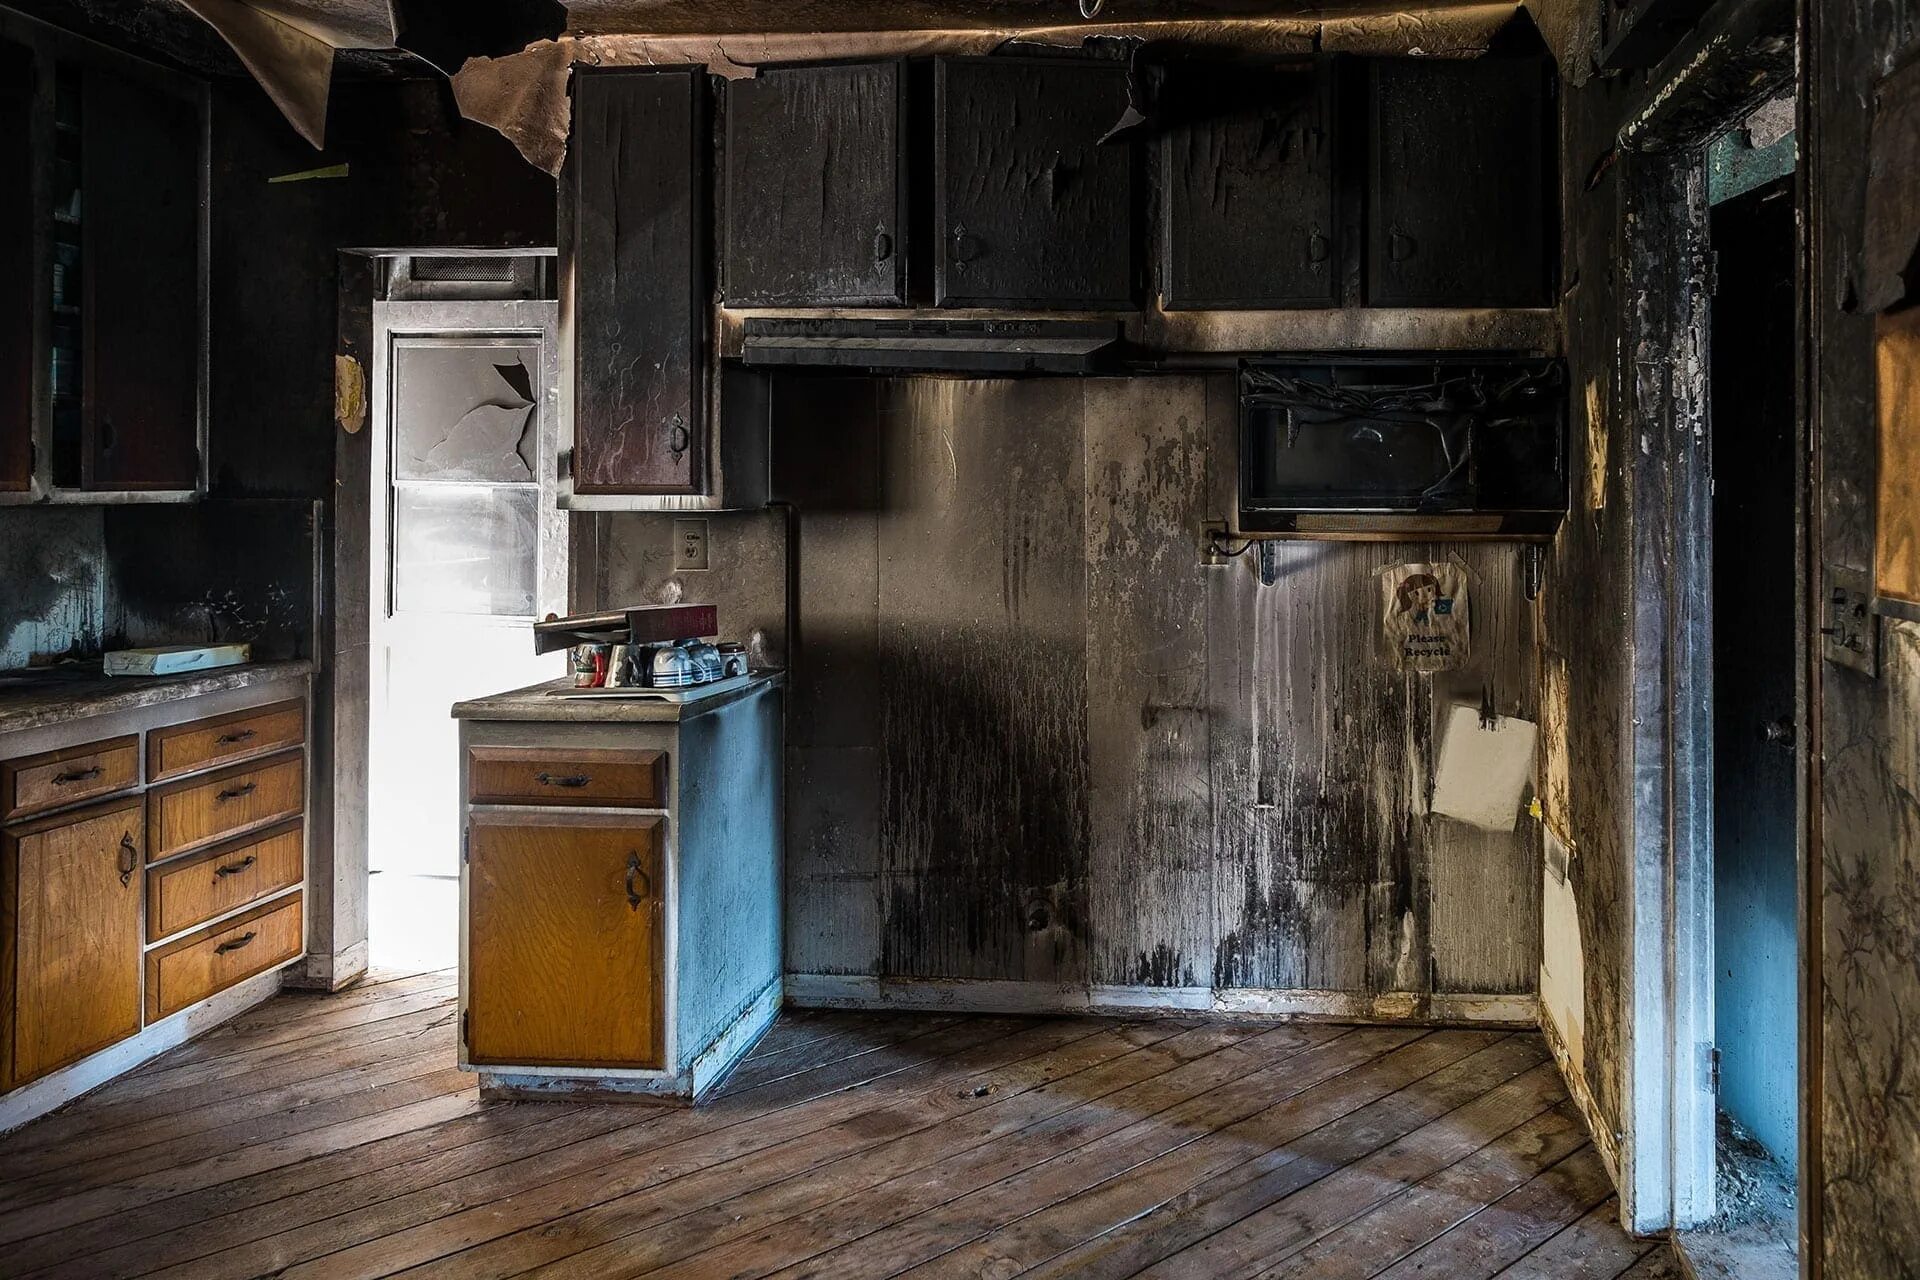 Имущество после пожара. Квартира после пожара. Дом после пожара. Кухня после пожара. Сгоревшая квартира внутри.